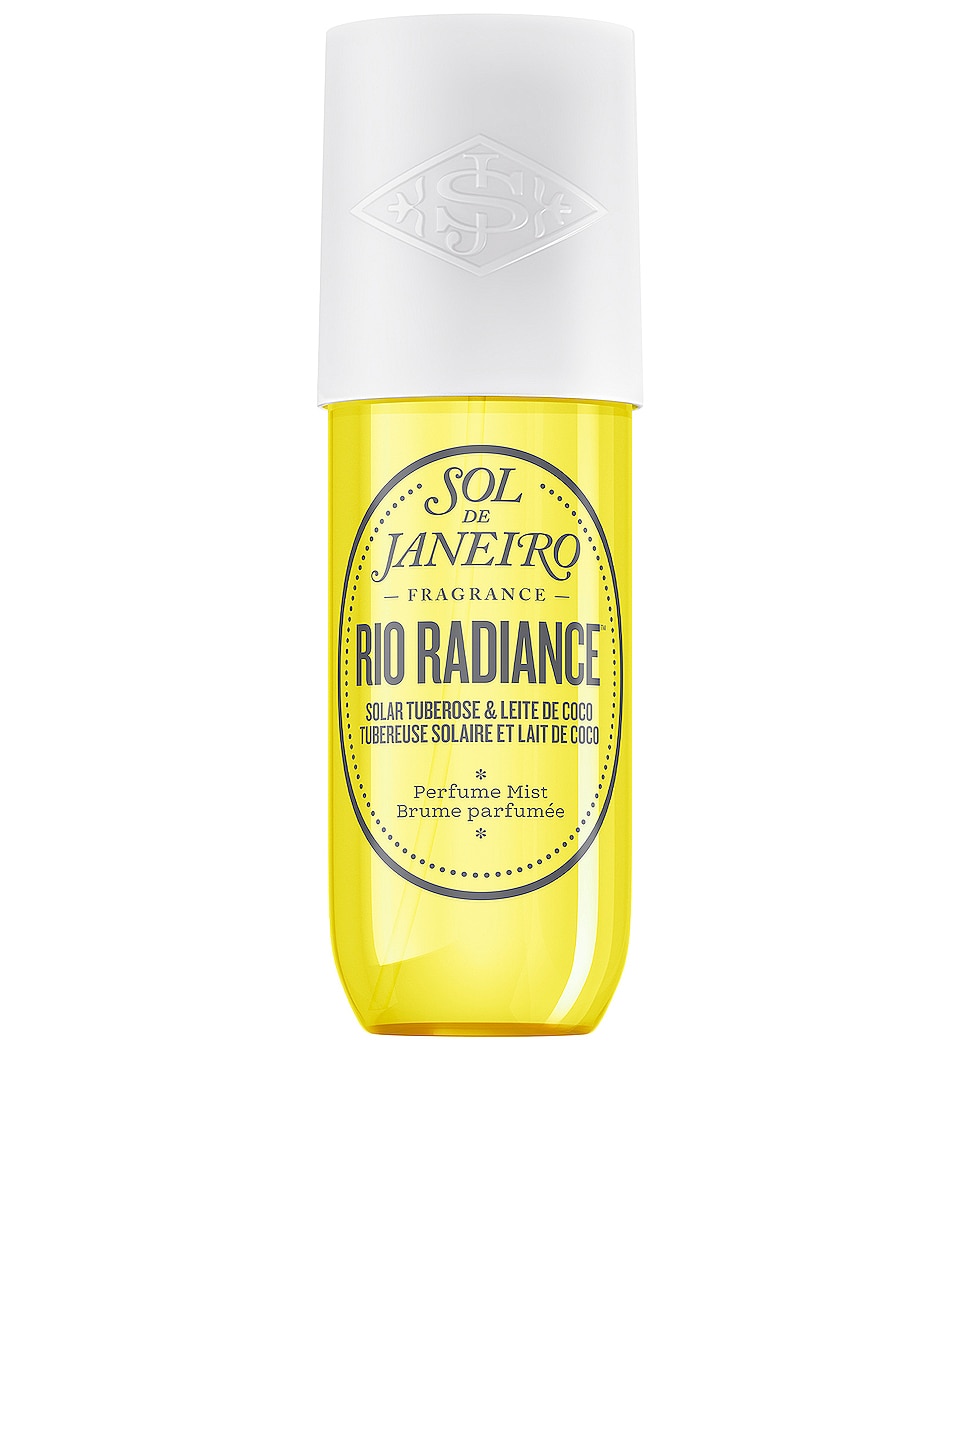 Rio Radiance Perfume Mist 240ml